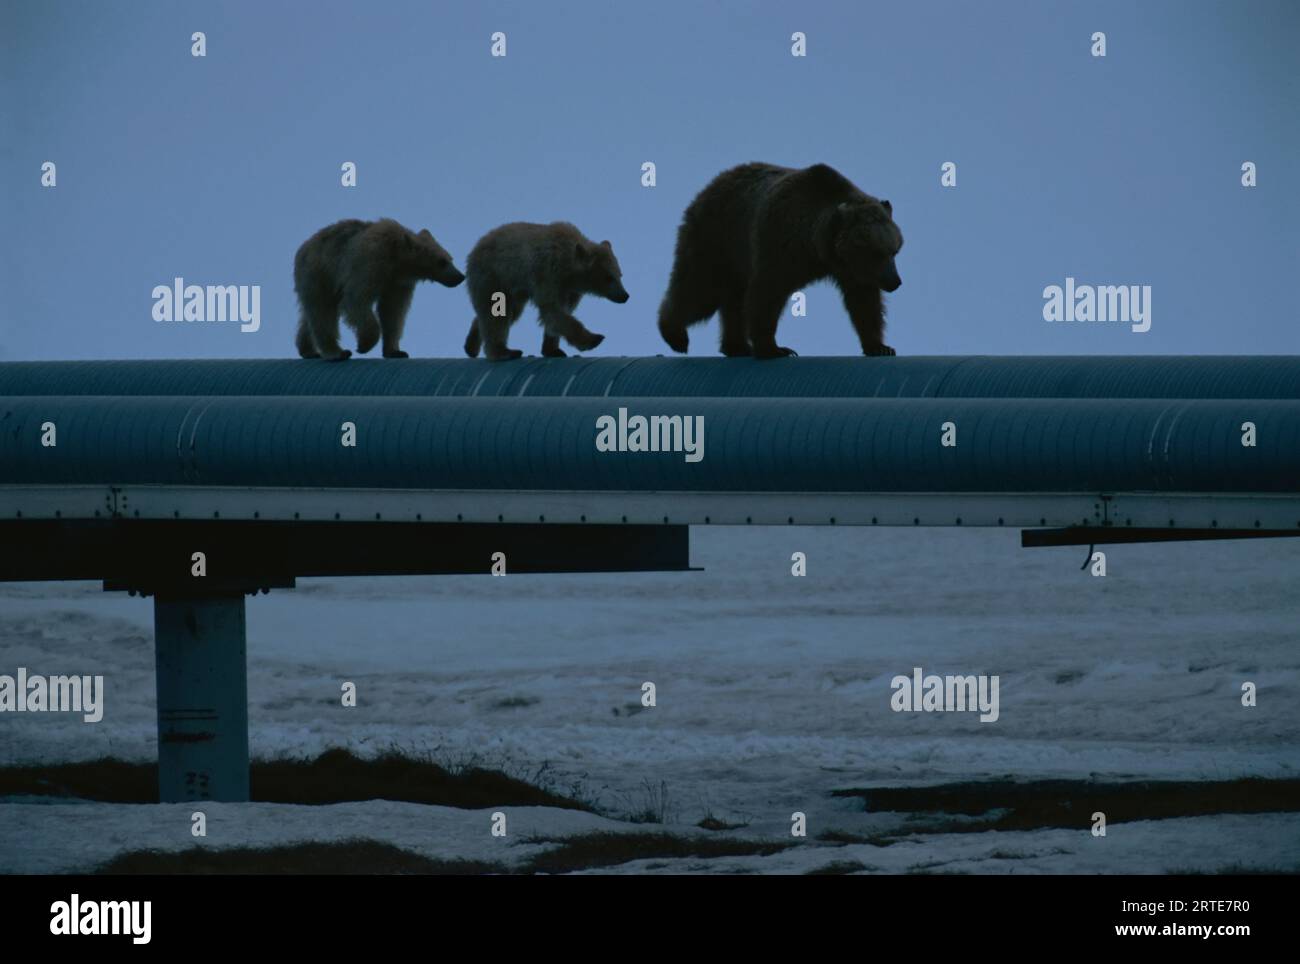 Mutter Grizzlybär (Ursus arctos horribilis) mit ihren Jungen spaziert entlang der Ölpipeline; Prudhoe Bay, Alaska, Vereinigte Staaten von Amerika Stockfoto